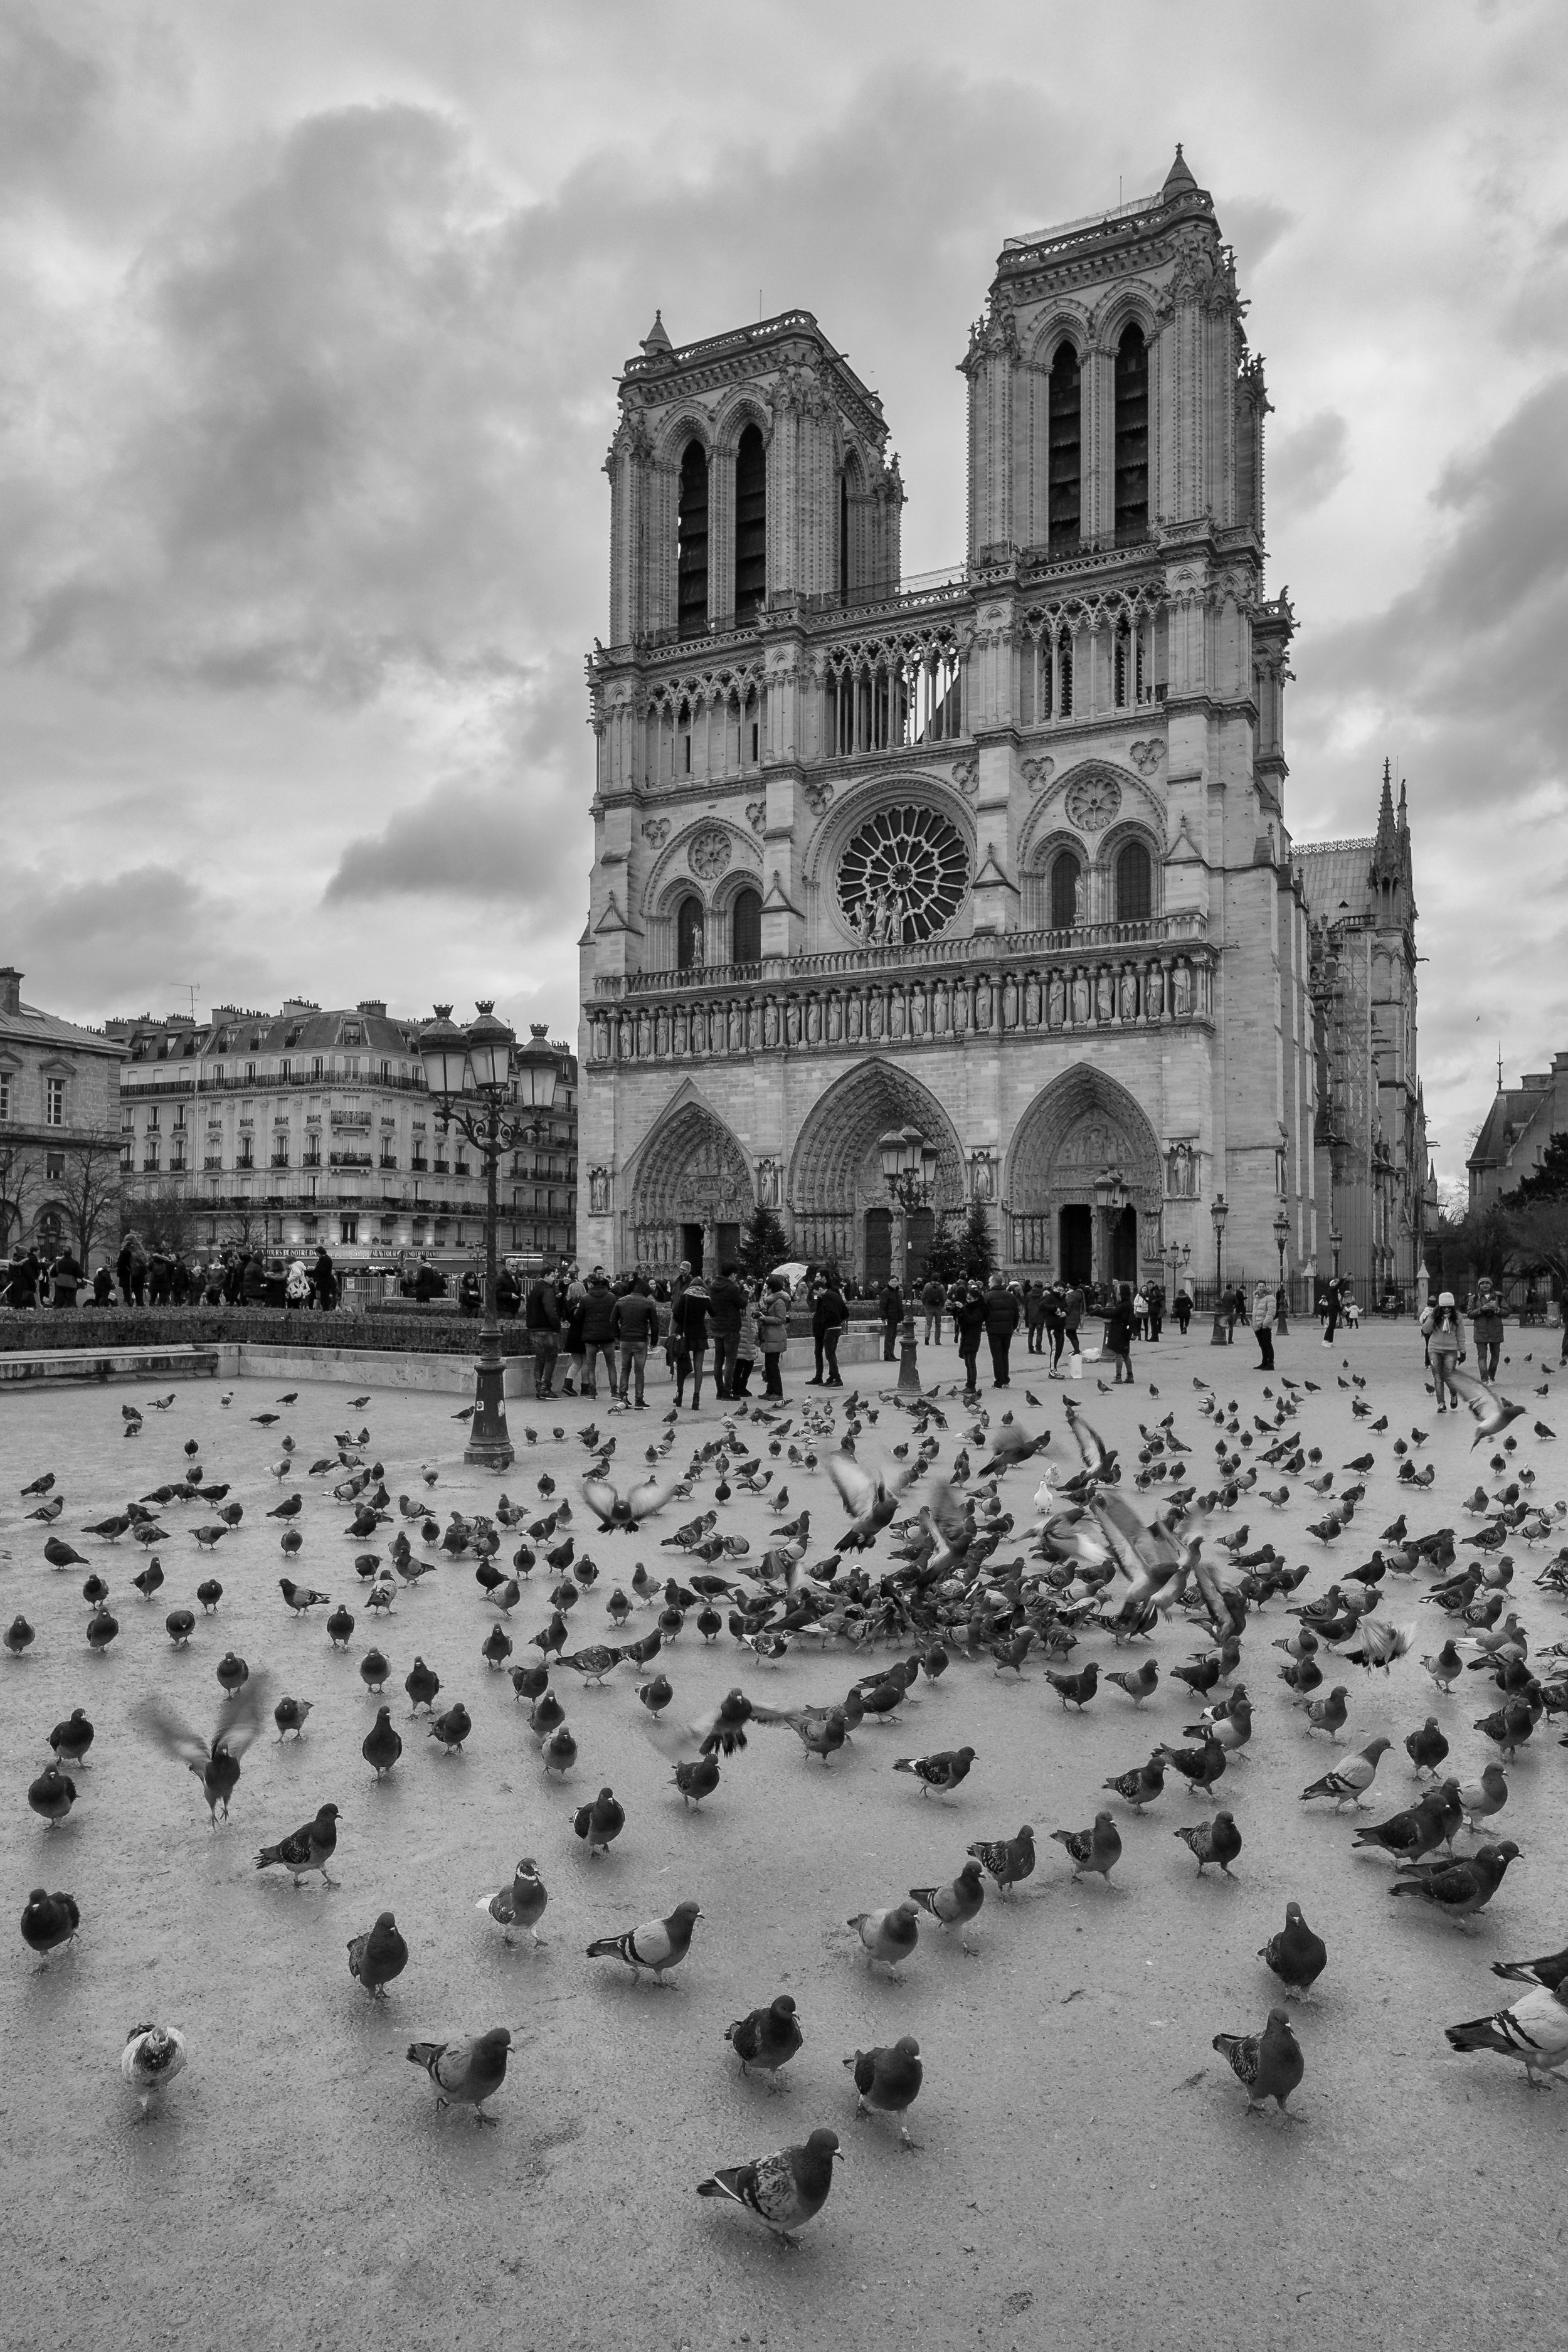  Notre Dame, Paris. January, 2017 